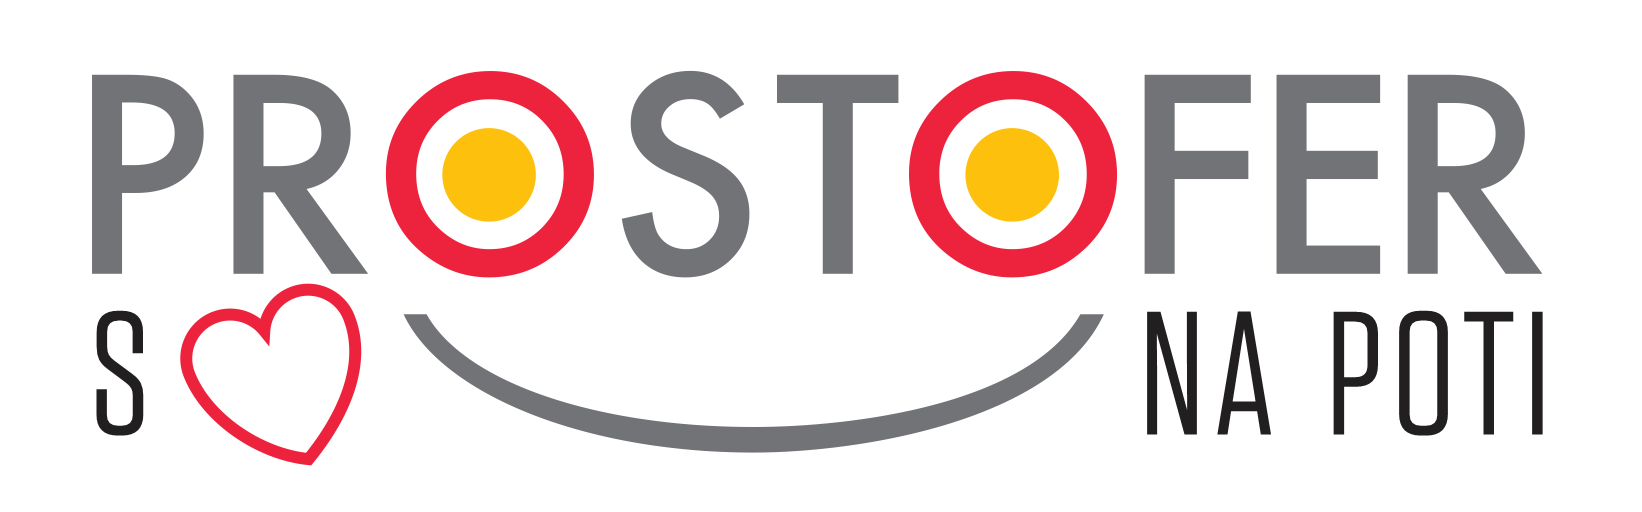 PROSTOFER-logo-2021-2 (002)-ssrecmnapoti